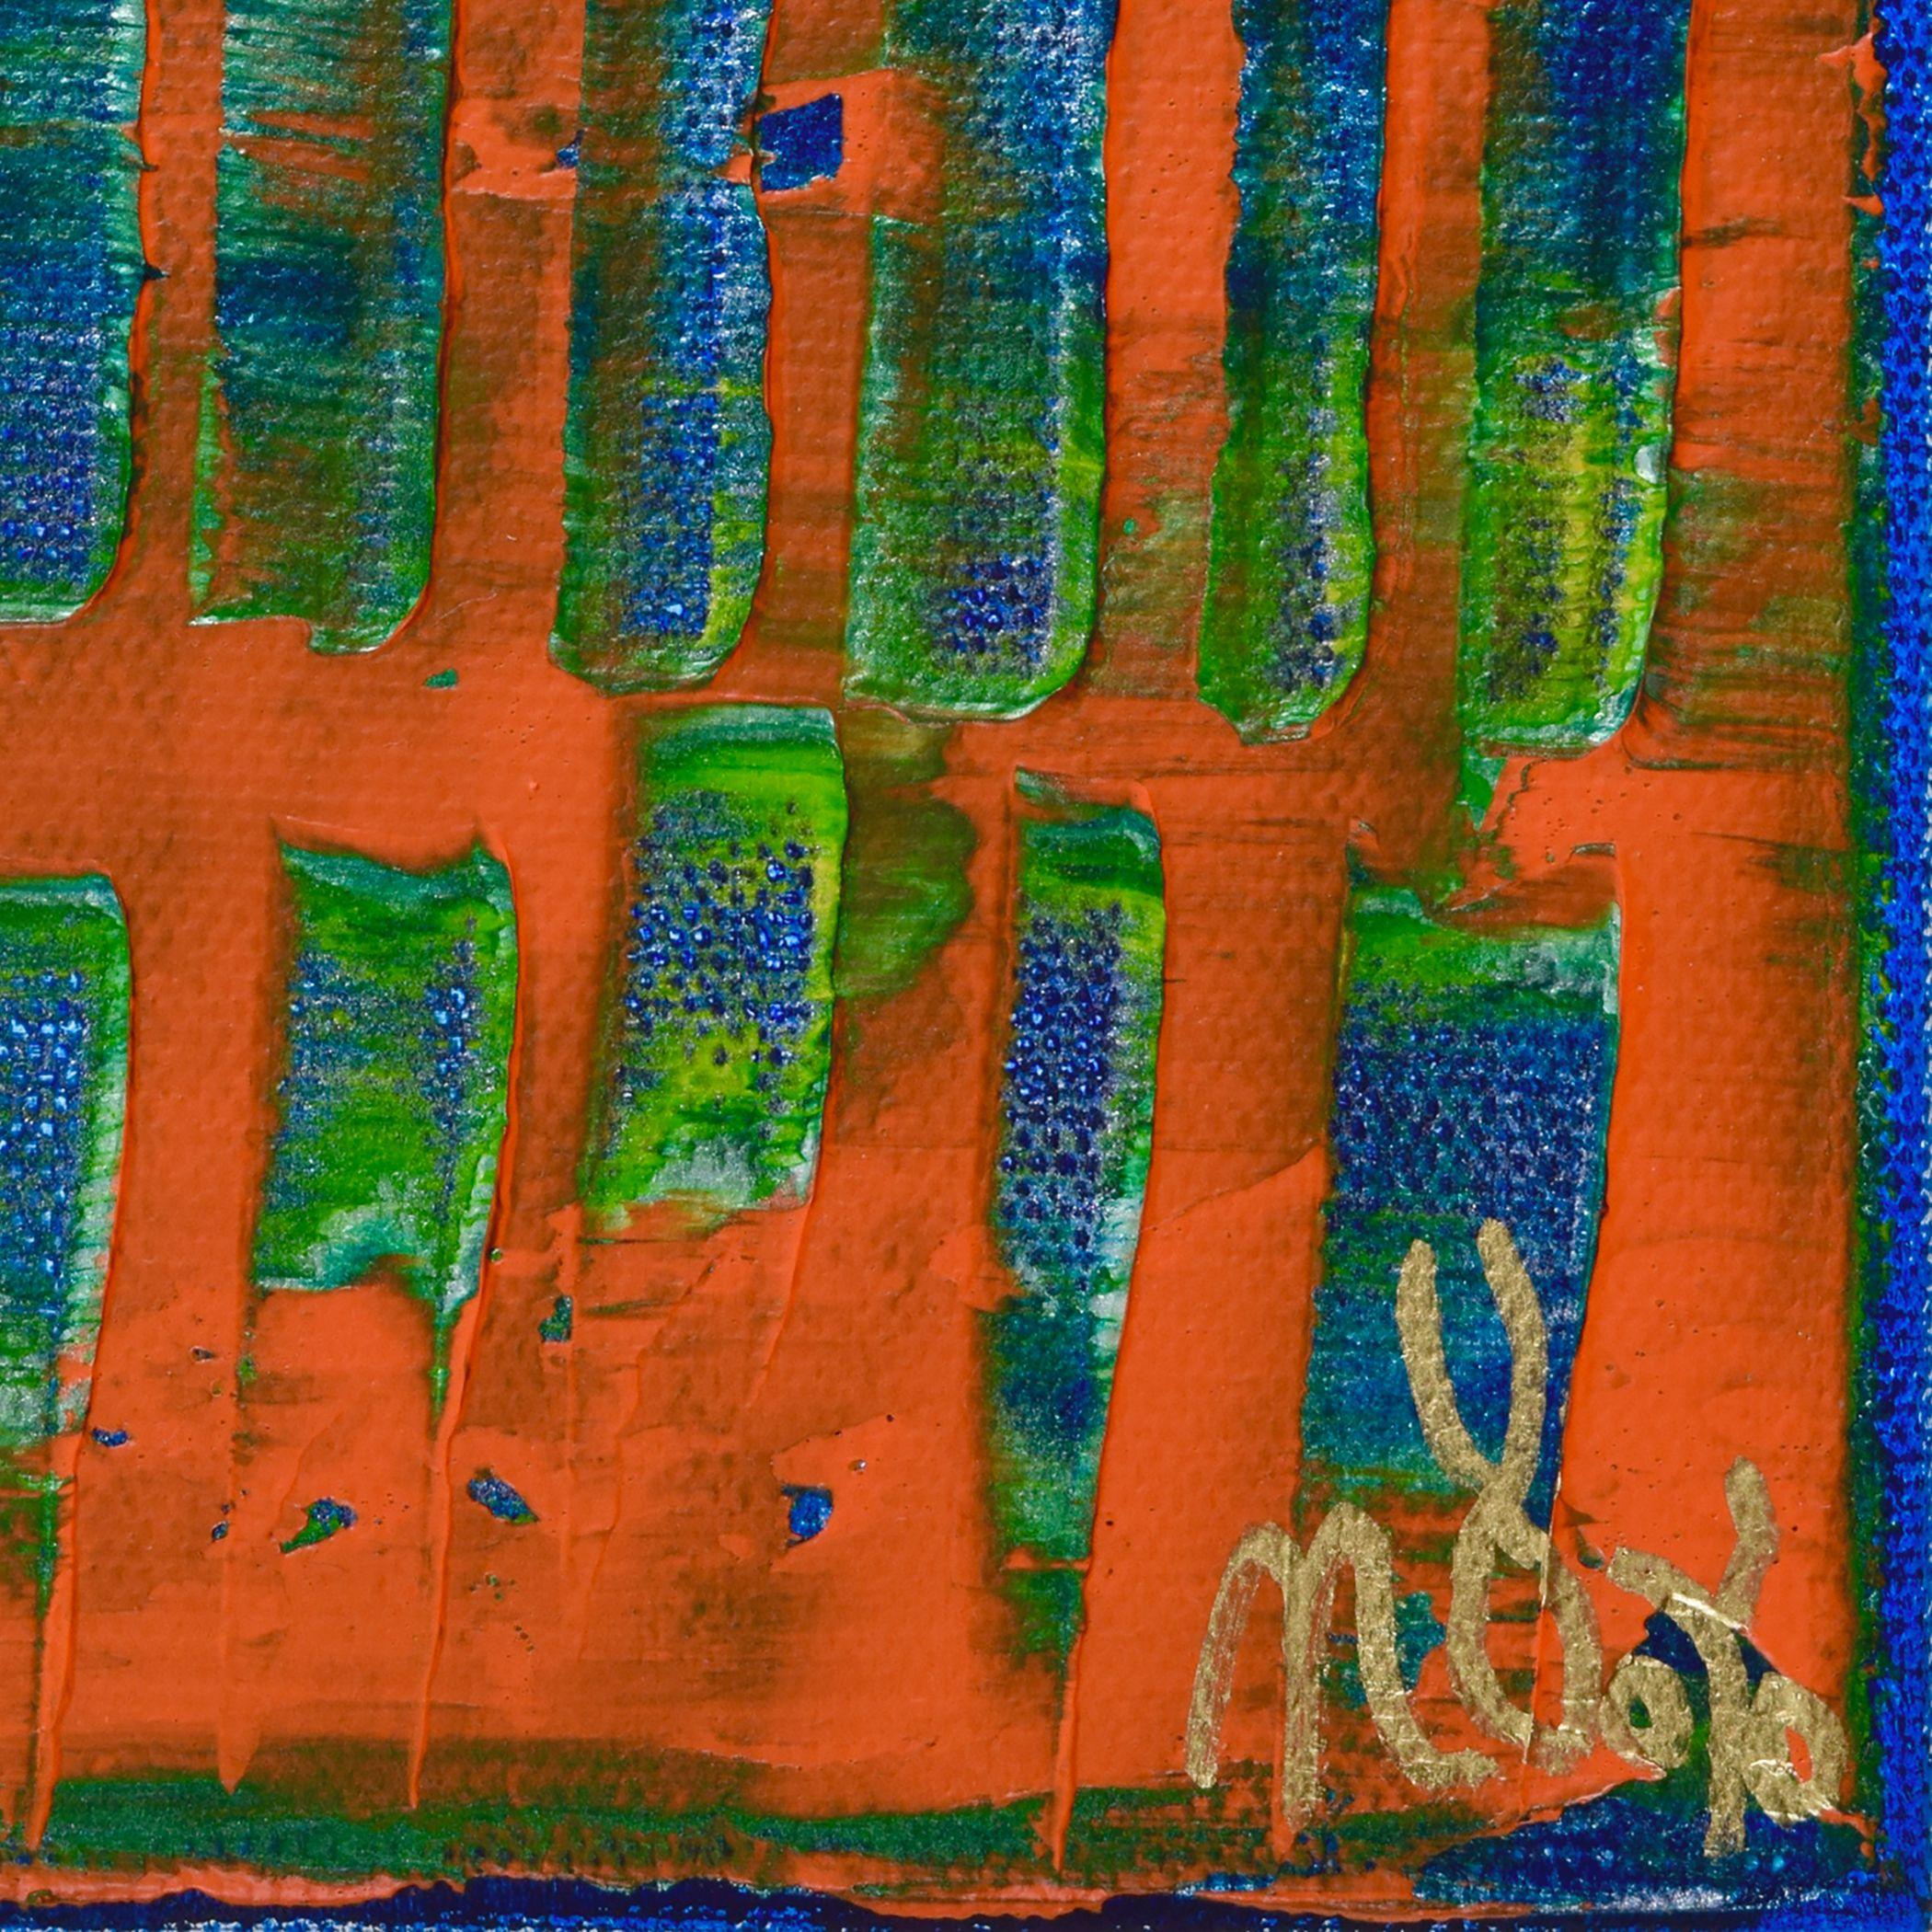 Abstraktes Farbfeld in Mischtechnik aus Acryl und Gouache (Tempera) mit kräftigen Orange-, Blau-, Silber- und Grüntönen und viel Licht. Dieses Gemälde wird auf einer hölzernen Leinwand montiert, an den Seiten bemalt und auf der Vorderseite mit